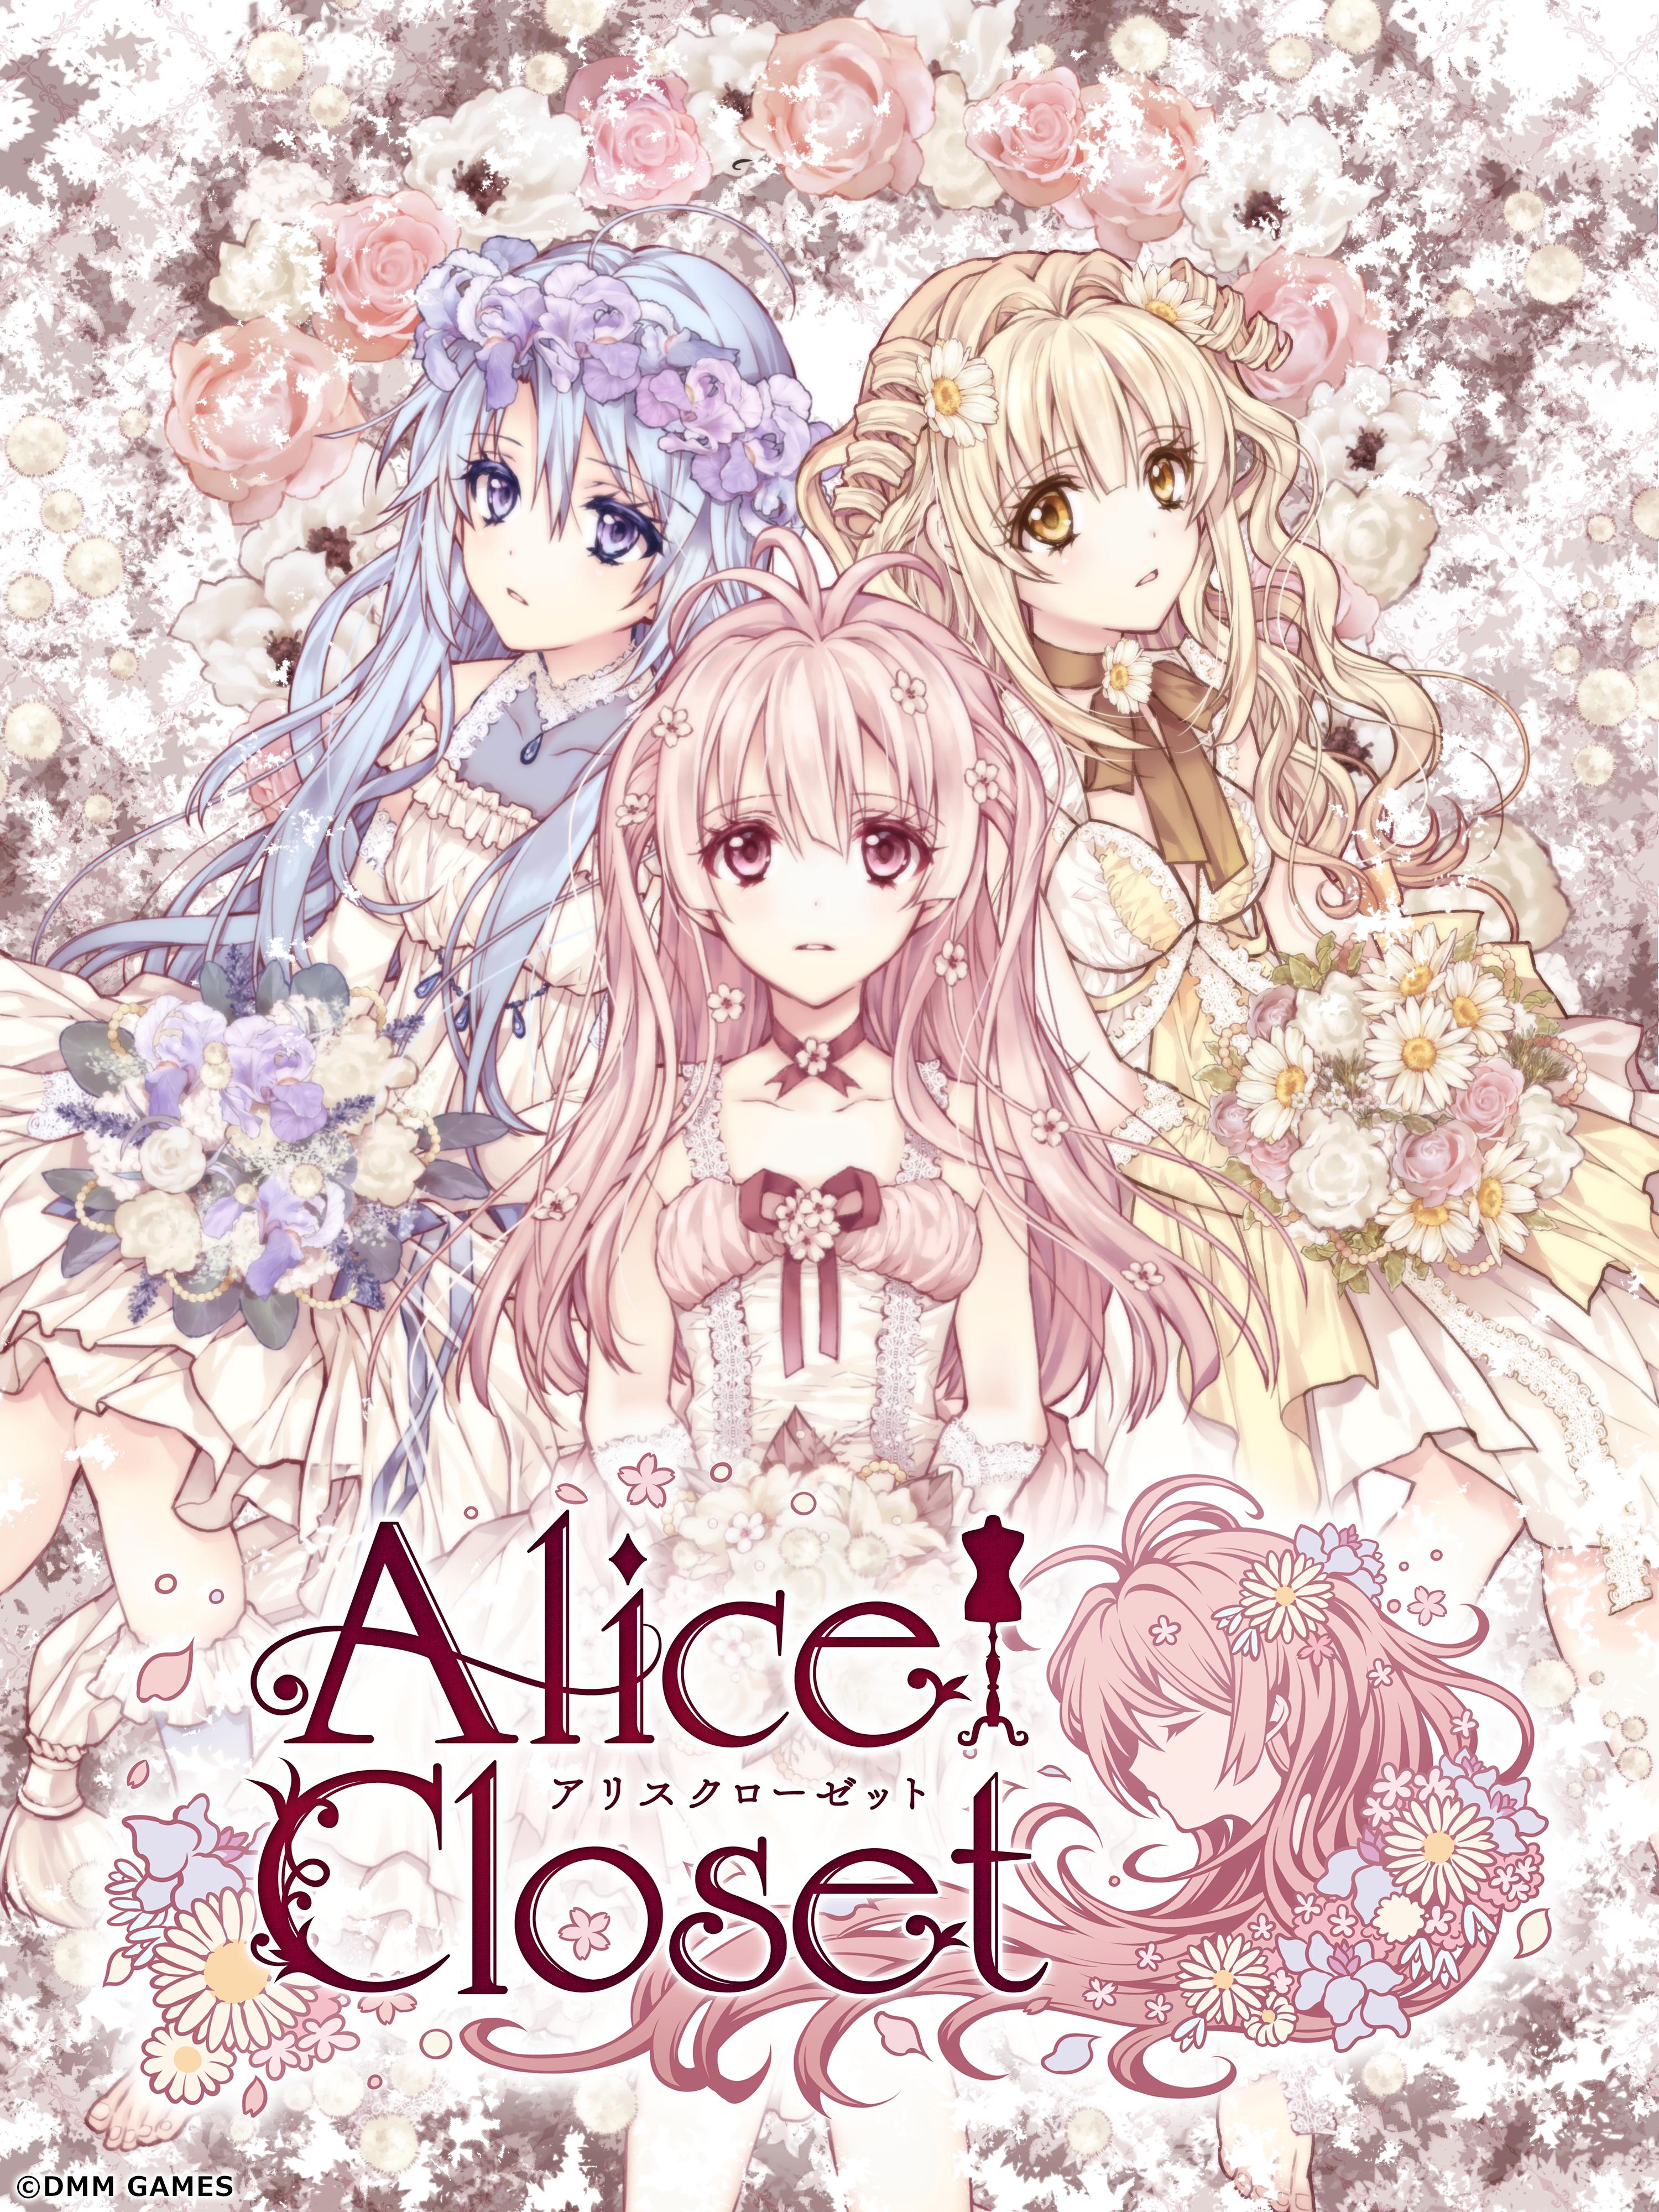 Alice Closet